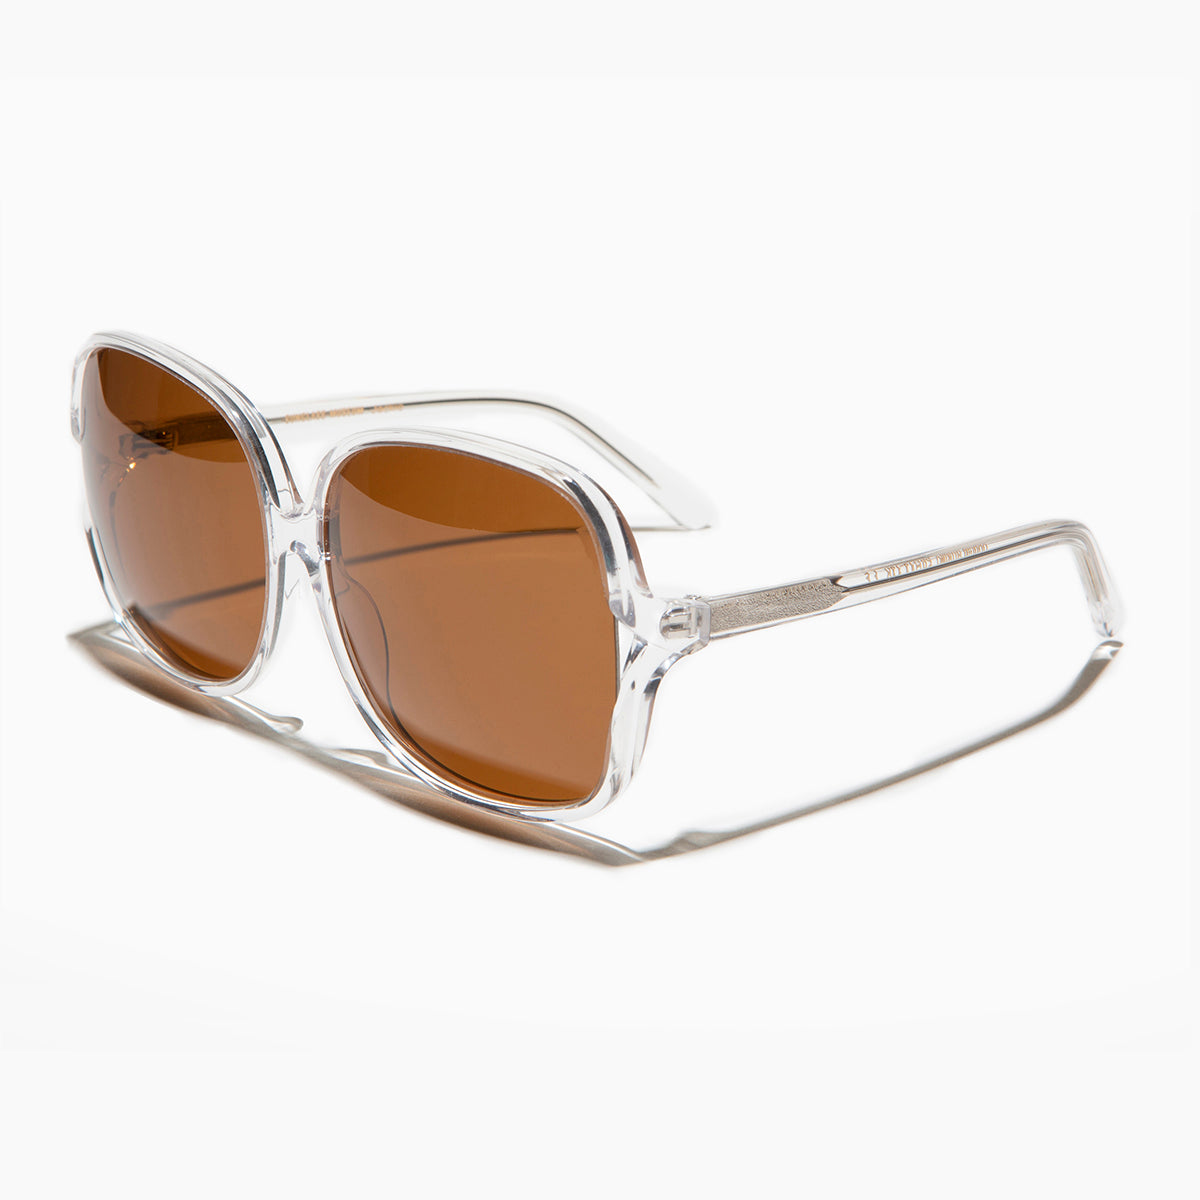 Vintage Oversized Sunglasses Jackie O Style 1960s Oversized Sunglasses Mod Italy Designer